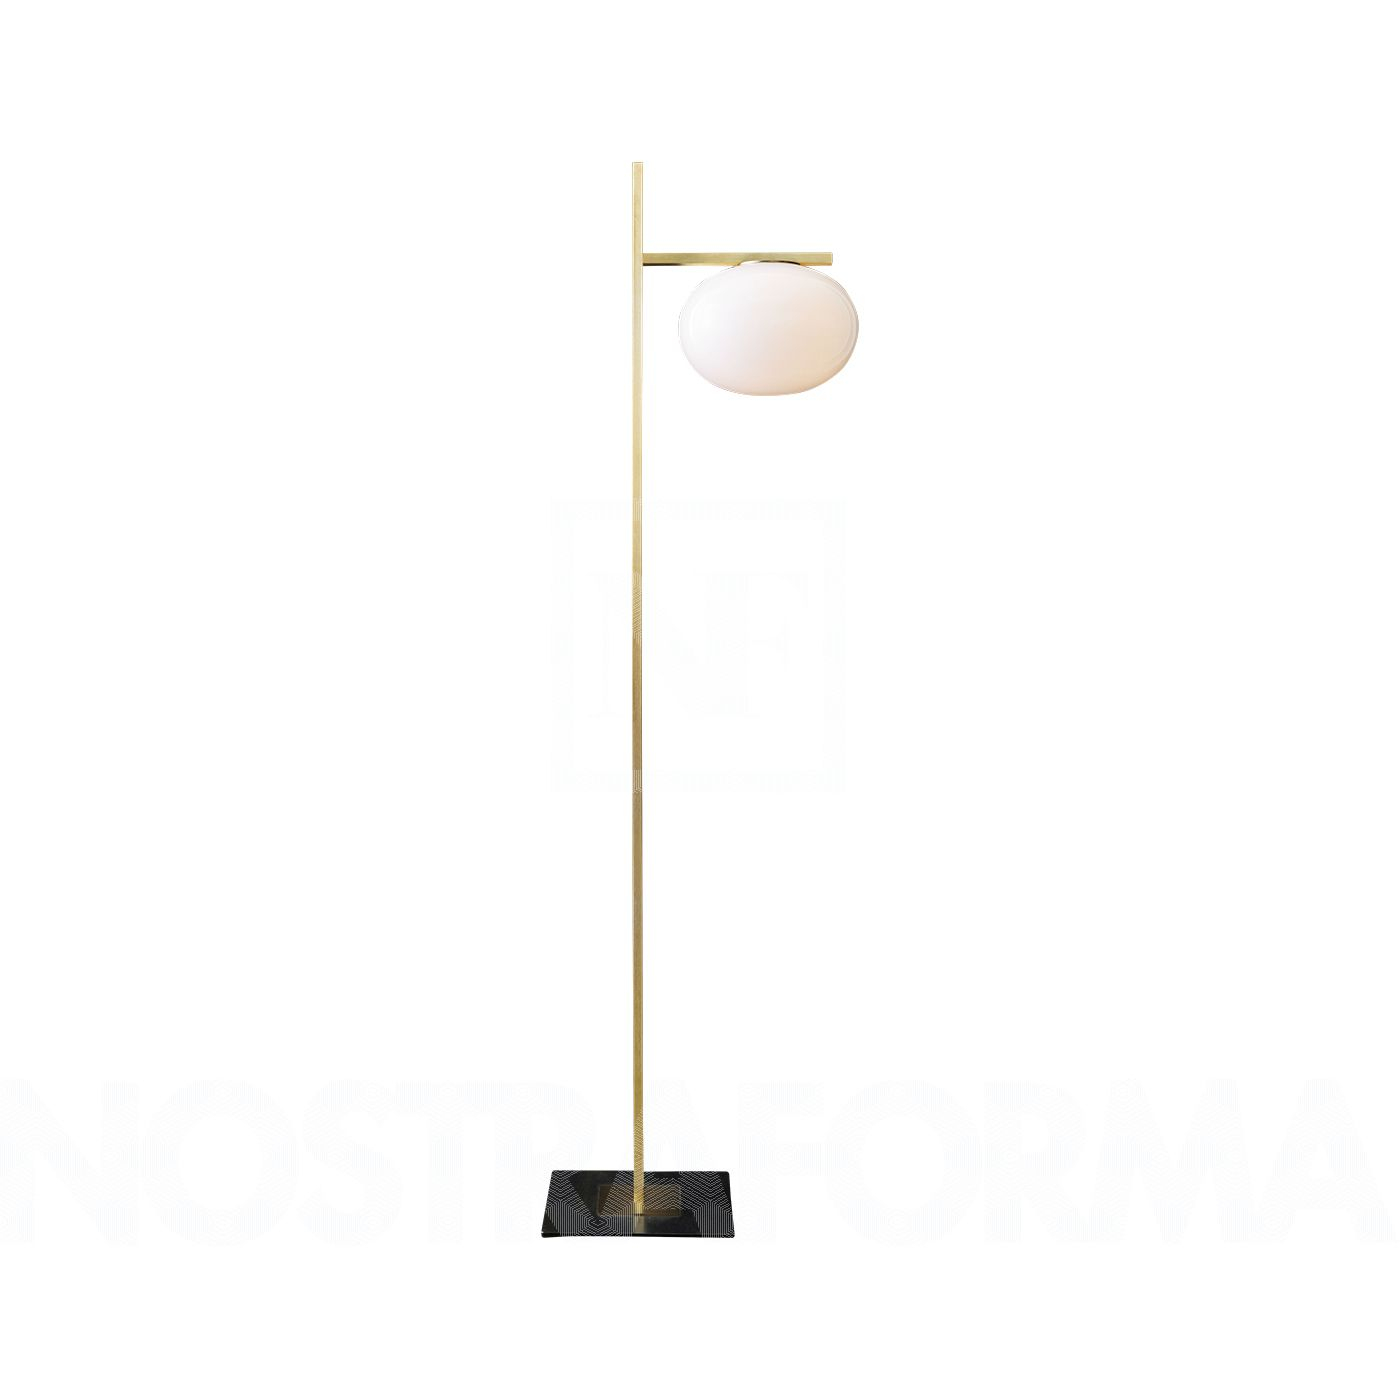 Oluce Alba 382 Floor Lamp with regard to measurements 1400 X 1400